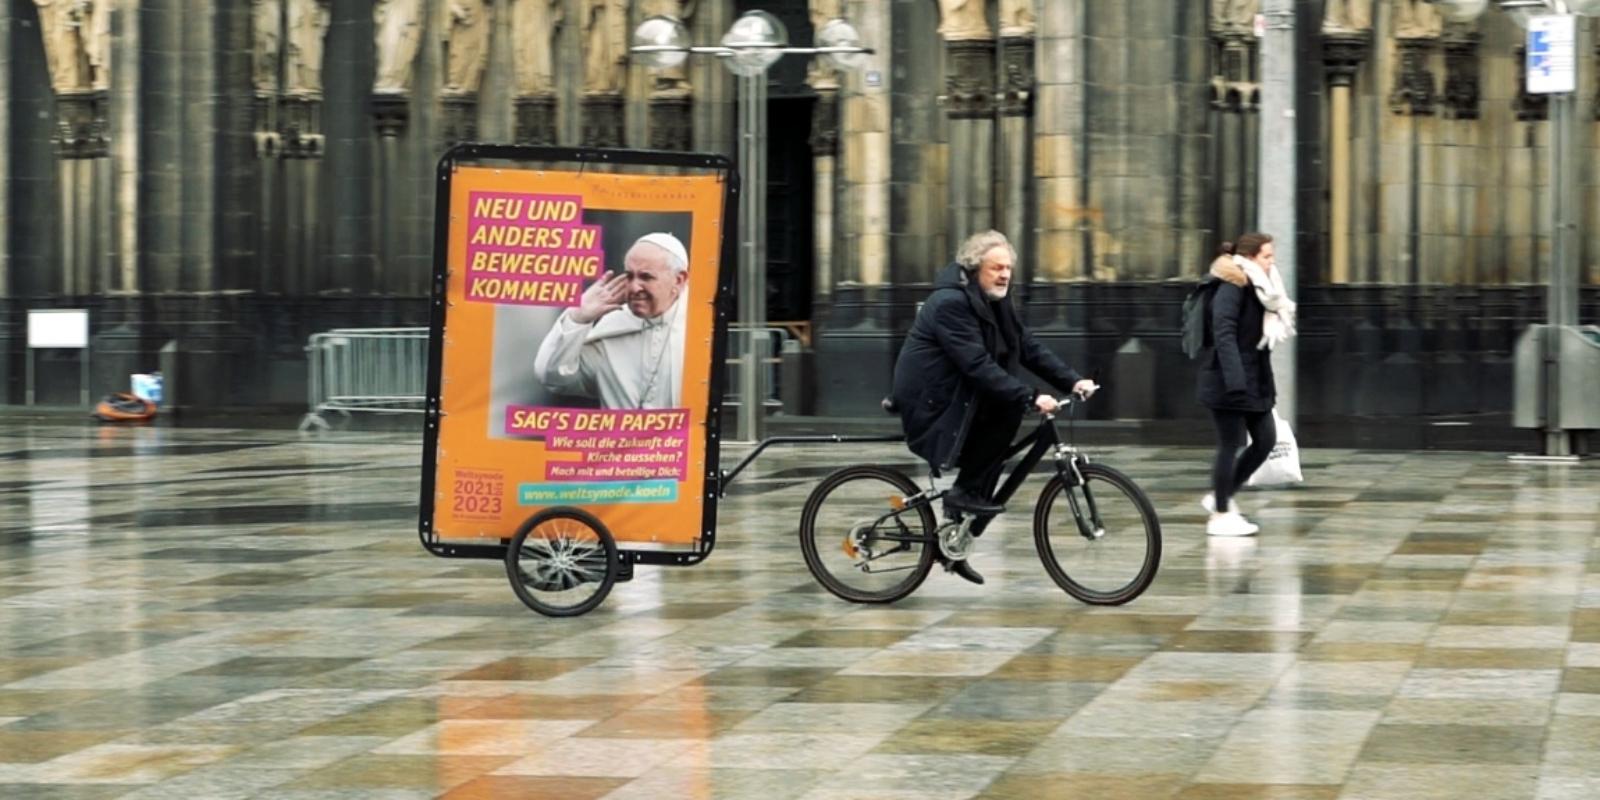 Der Apostolische Administrator des Erzbistums Köln, Weihbischof Rolf Steinhäuser, mit dem Fahrrad auf dem Weg zum Domforum zur Eröffnung der digitalen Beteiligungsplattform zur diözesanen Phase der Weltsynode 2021-2013 im Erzbistum Köln.